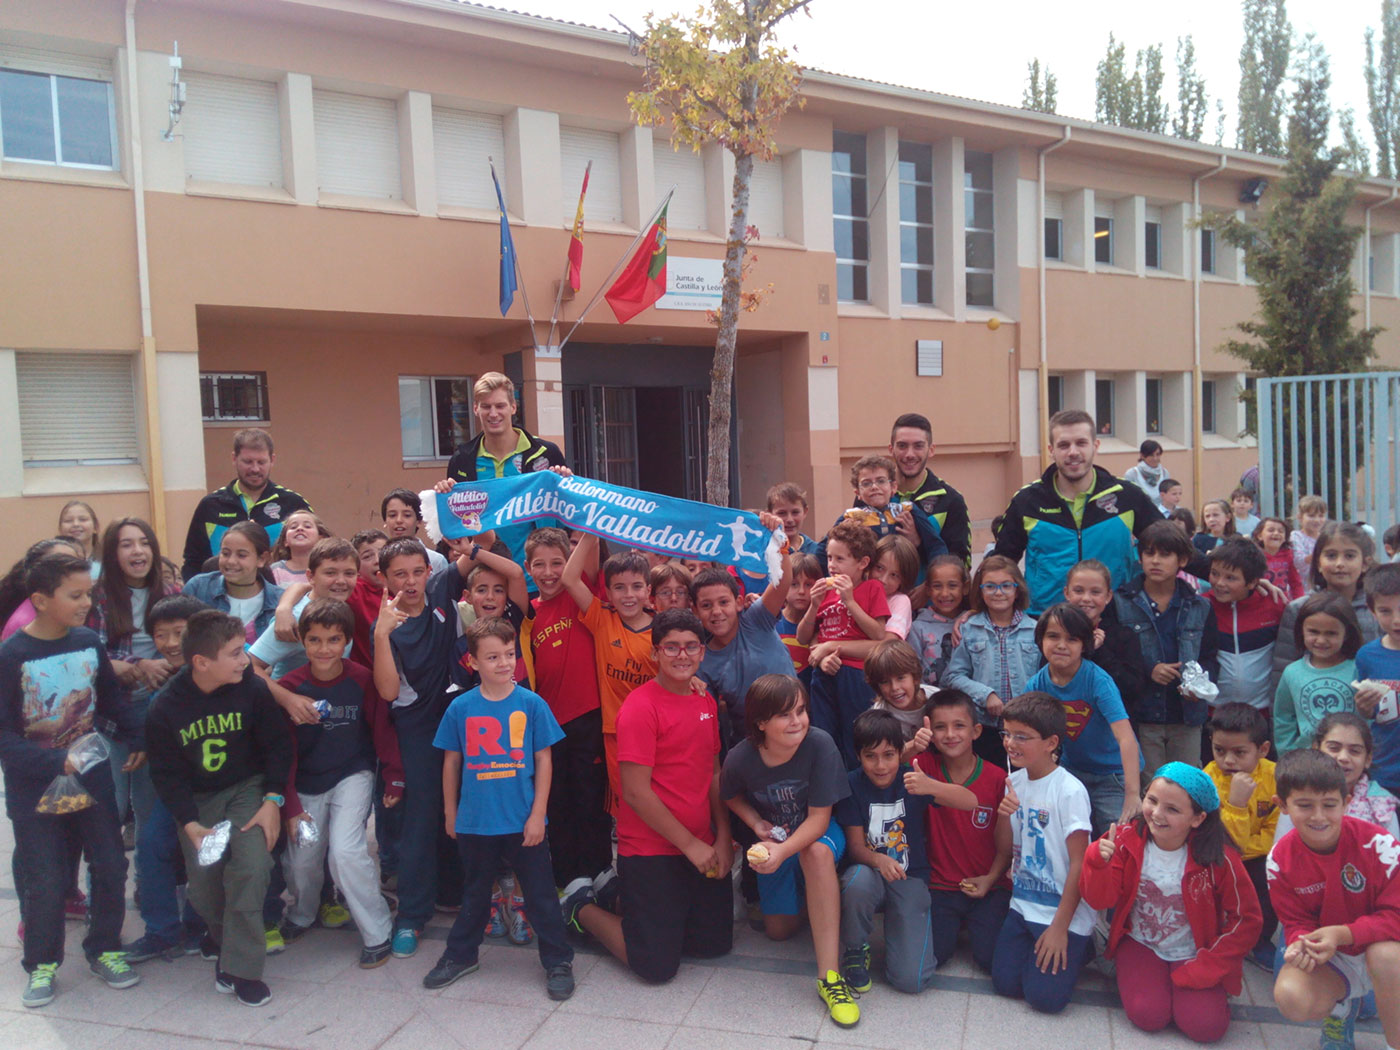 El programa ‘A jugar balonmano!’ impulsado por el Atlético Valladolid Recoletas continúa creciendo este curso con la participación de más de 200 niños | Galería 3 / 5